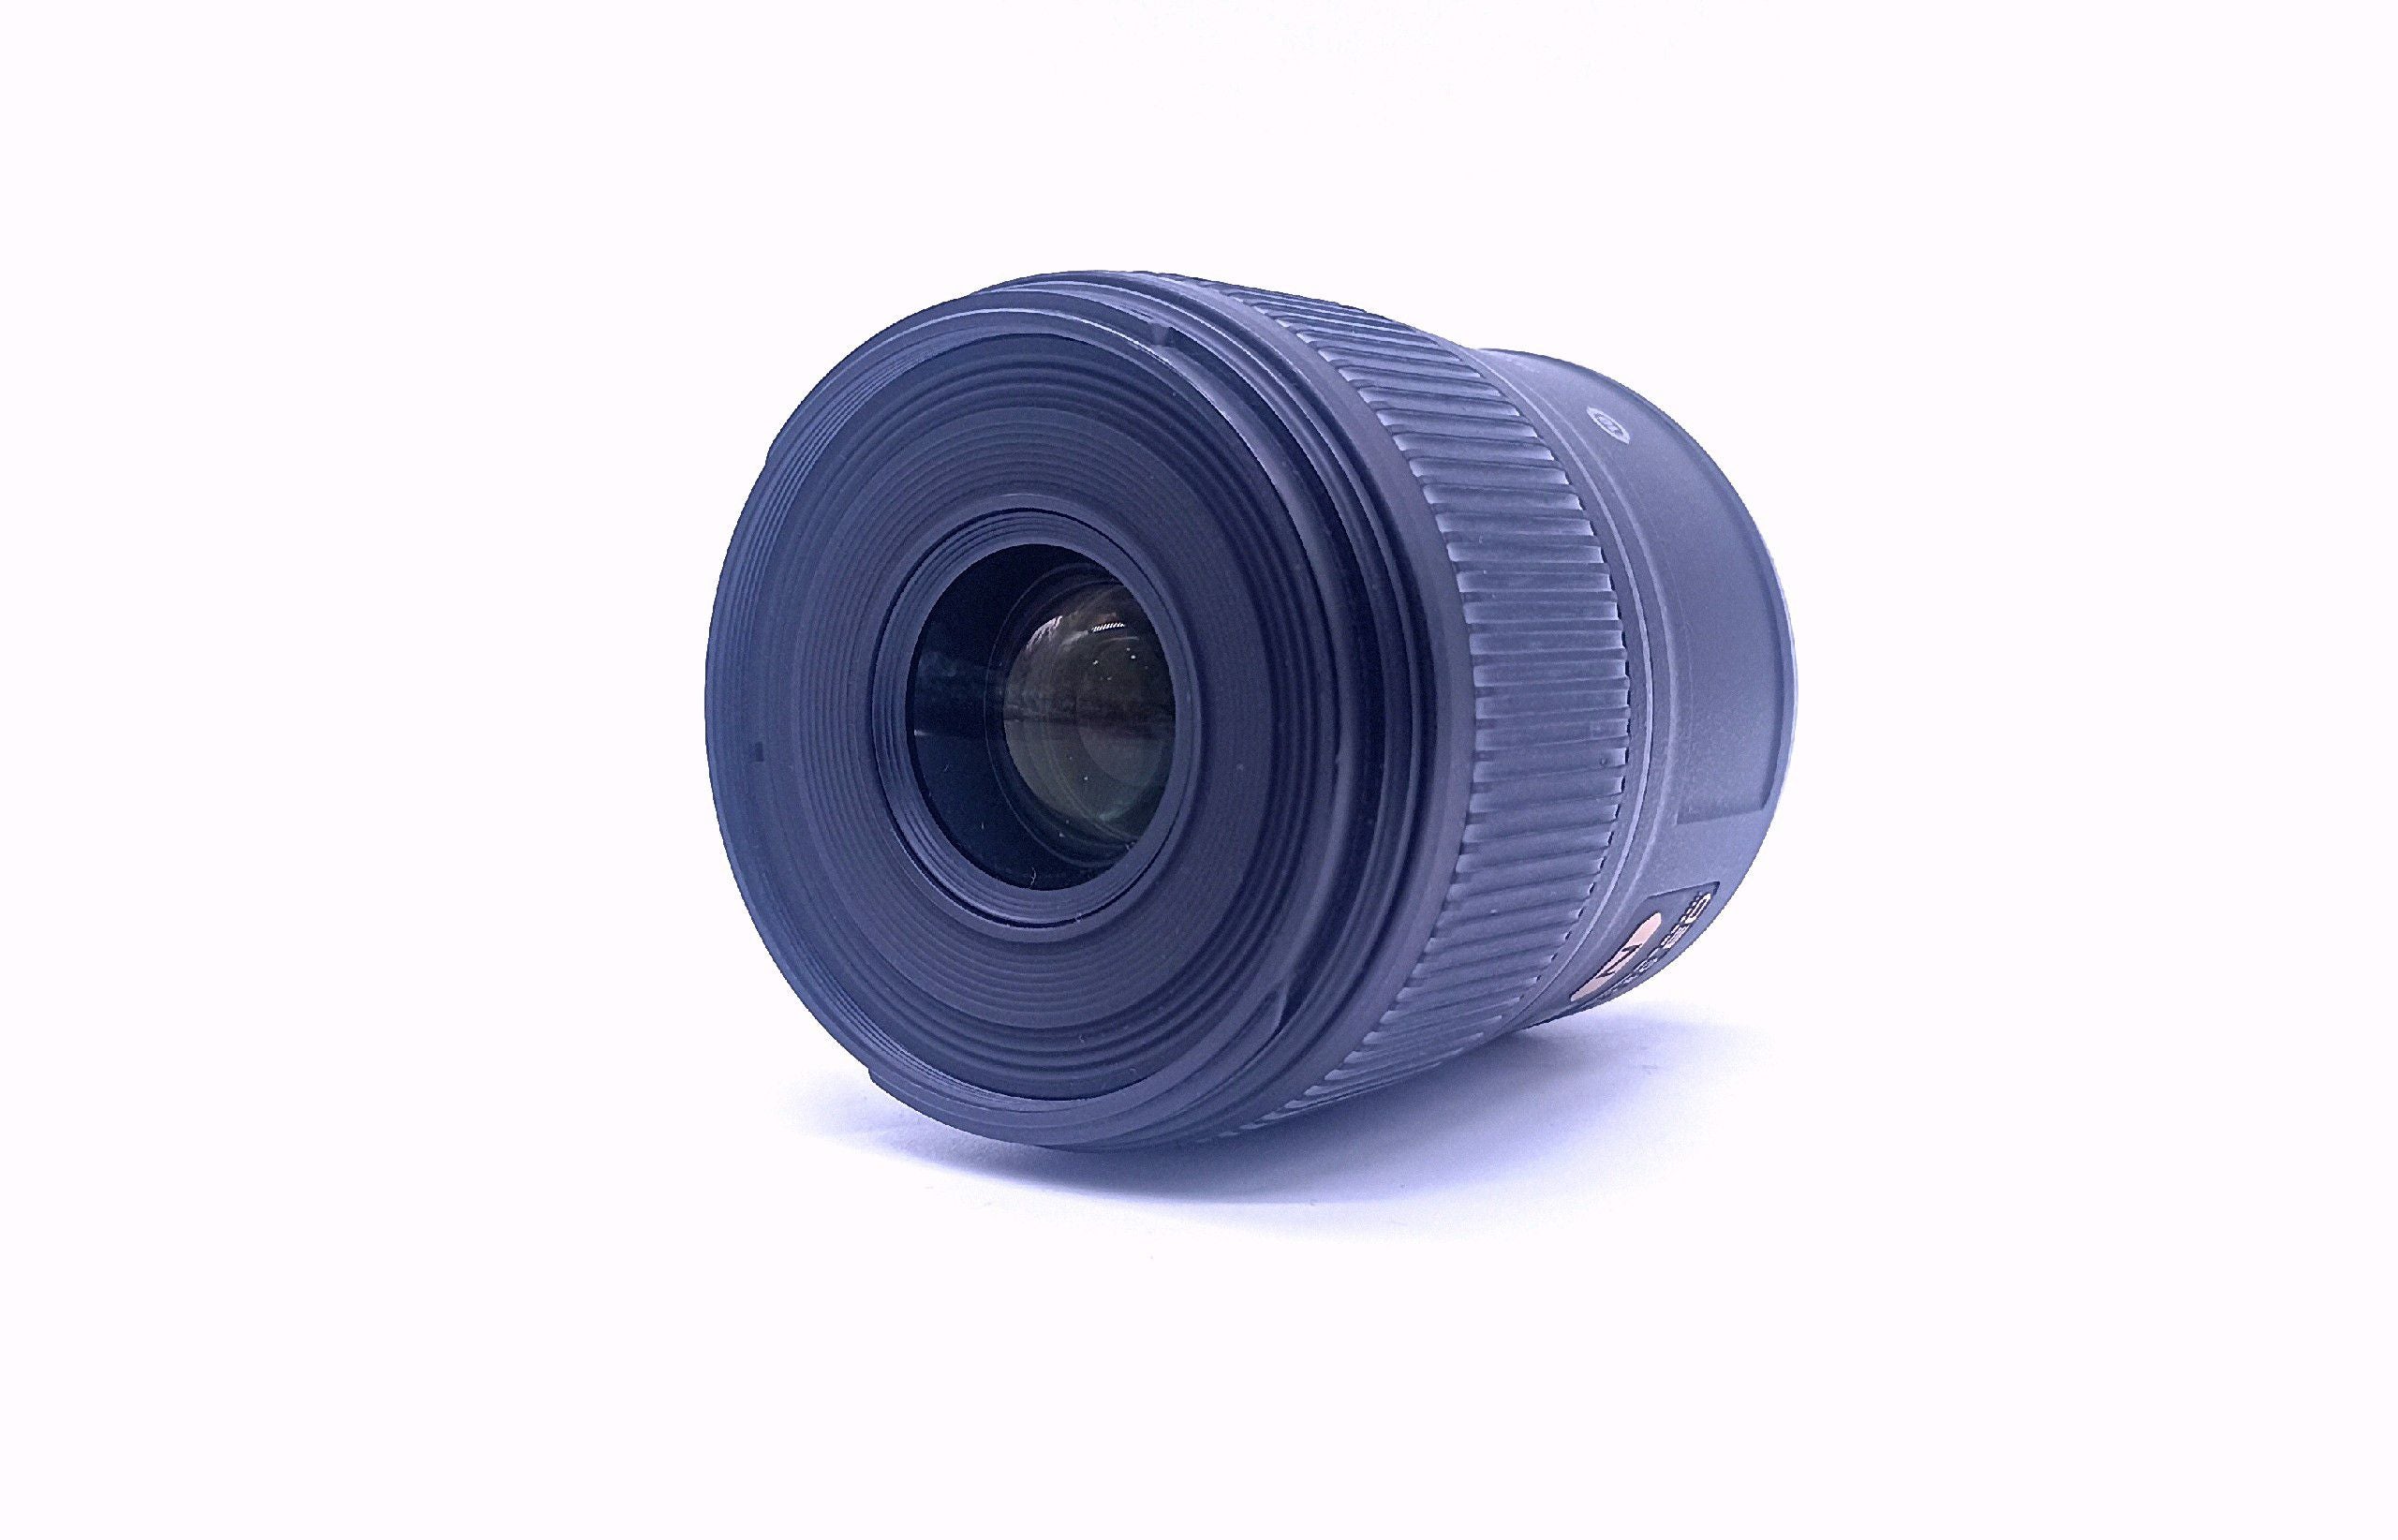 Used Nikon AF S Micro Nikkor 60mm f 2.8G ED Lens